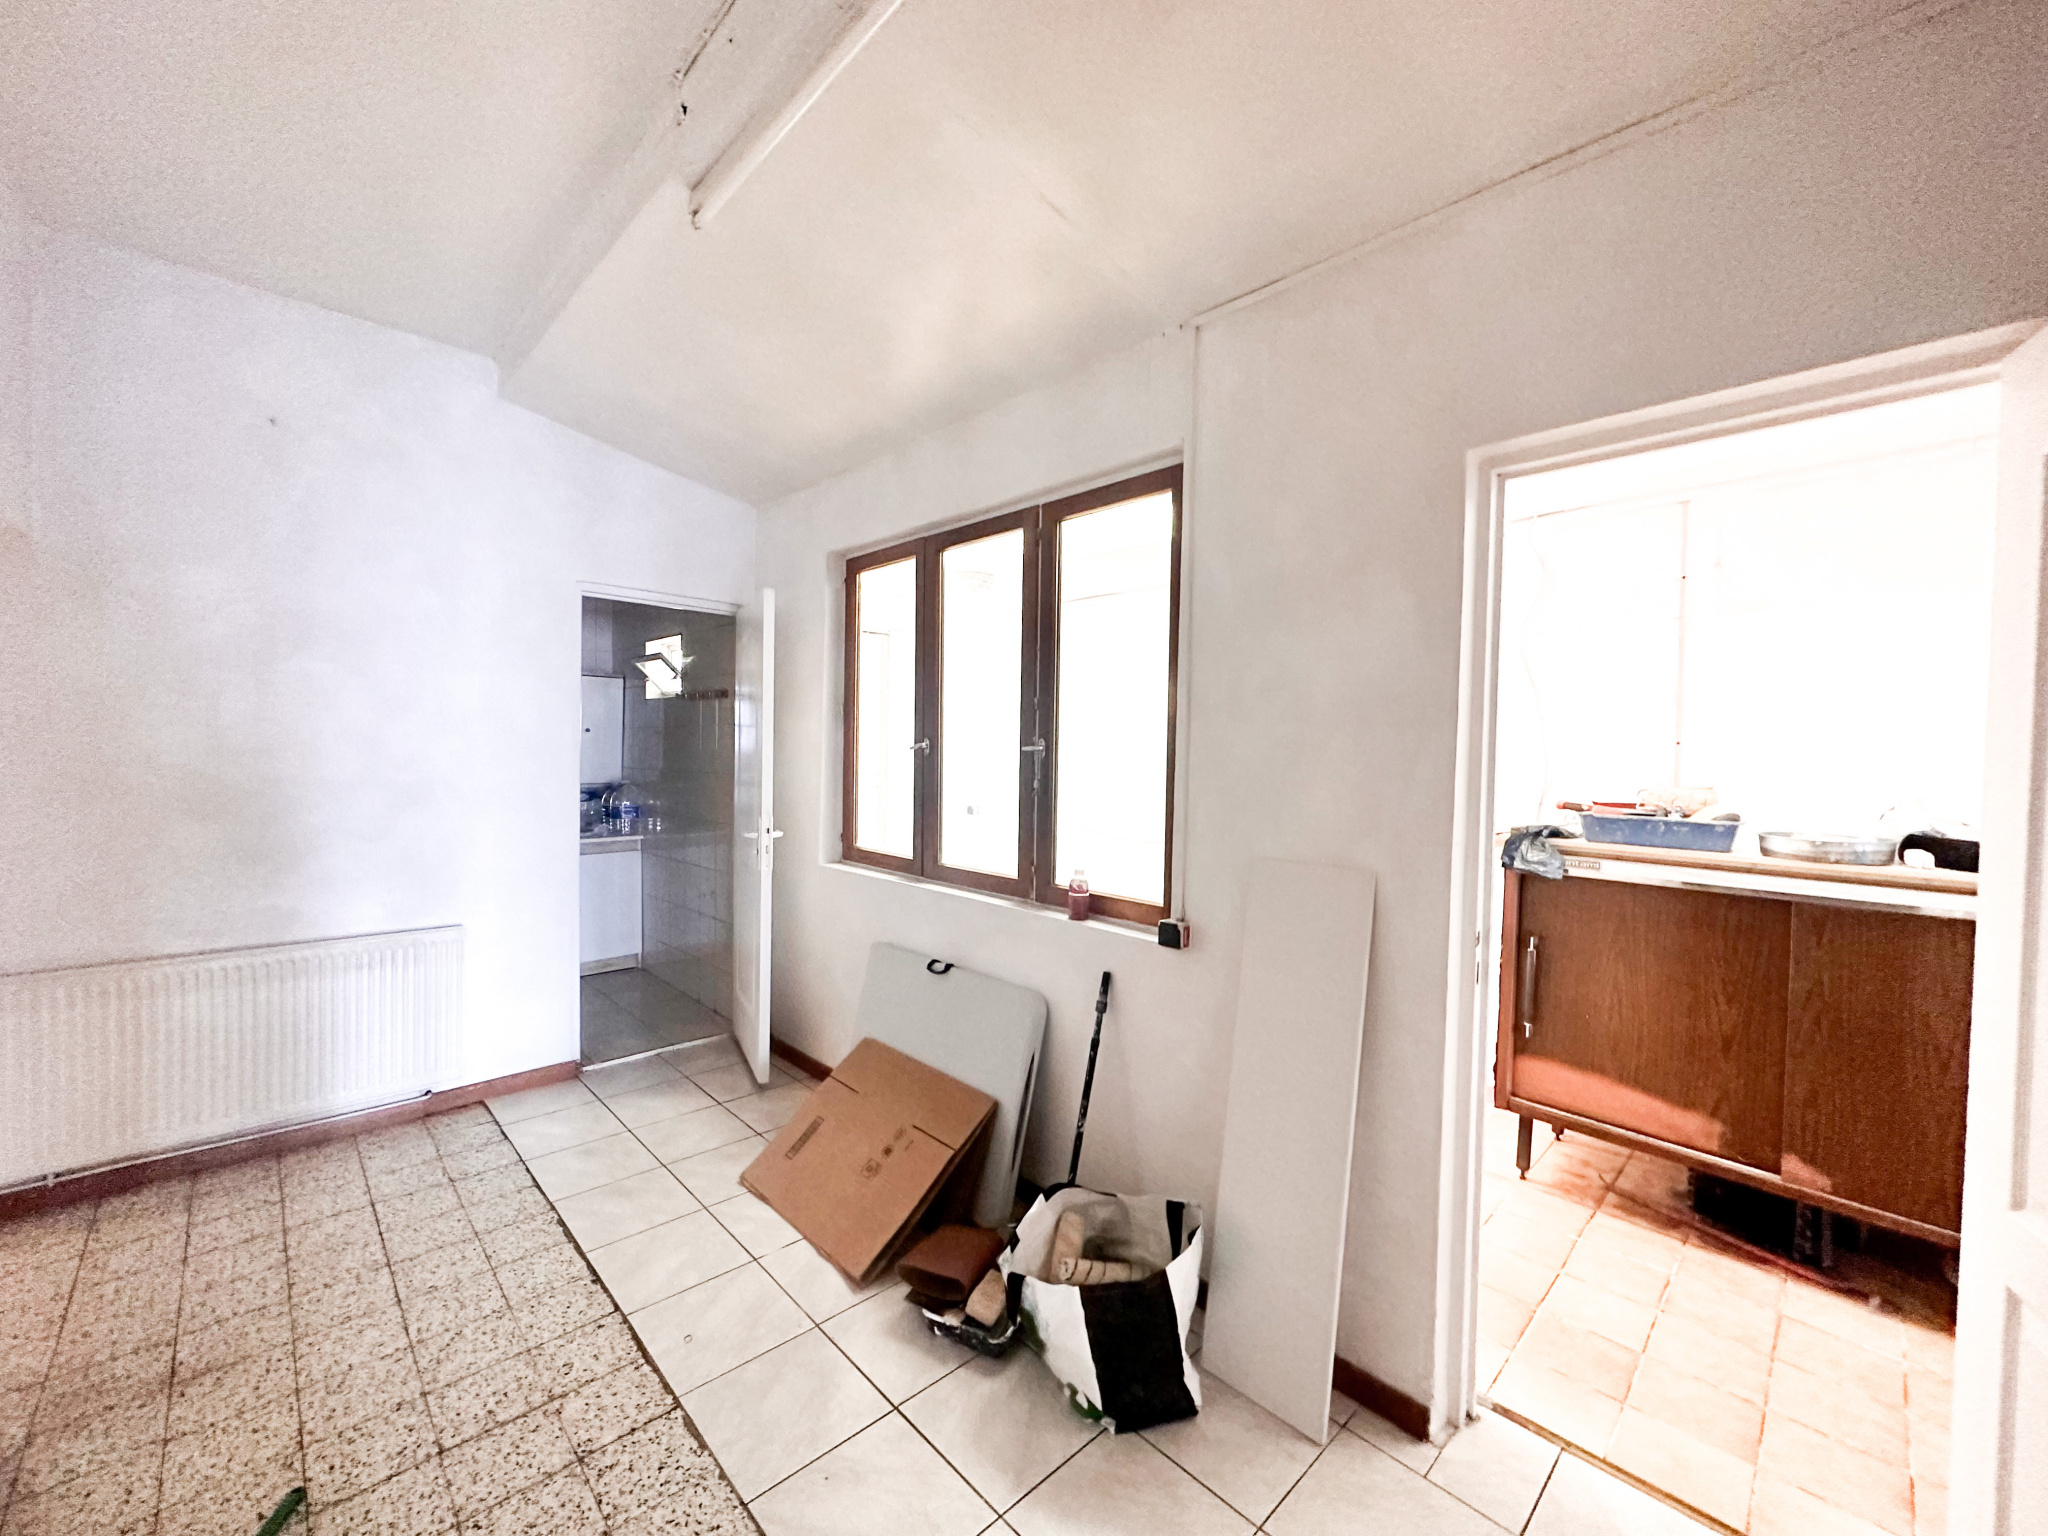 Immo80 – L'immobilier à Amiens et dans la Somme-Maison – 155 m2 – 4 chambres – dépendance – cave – cour